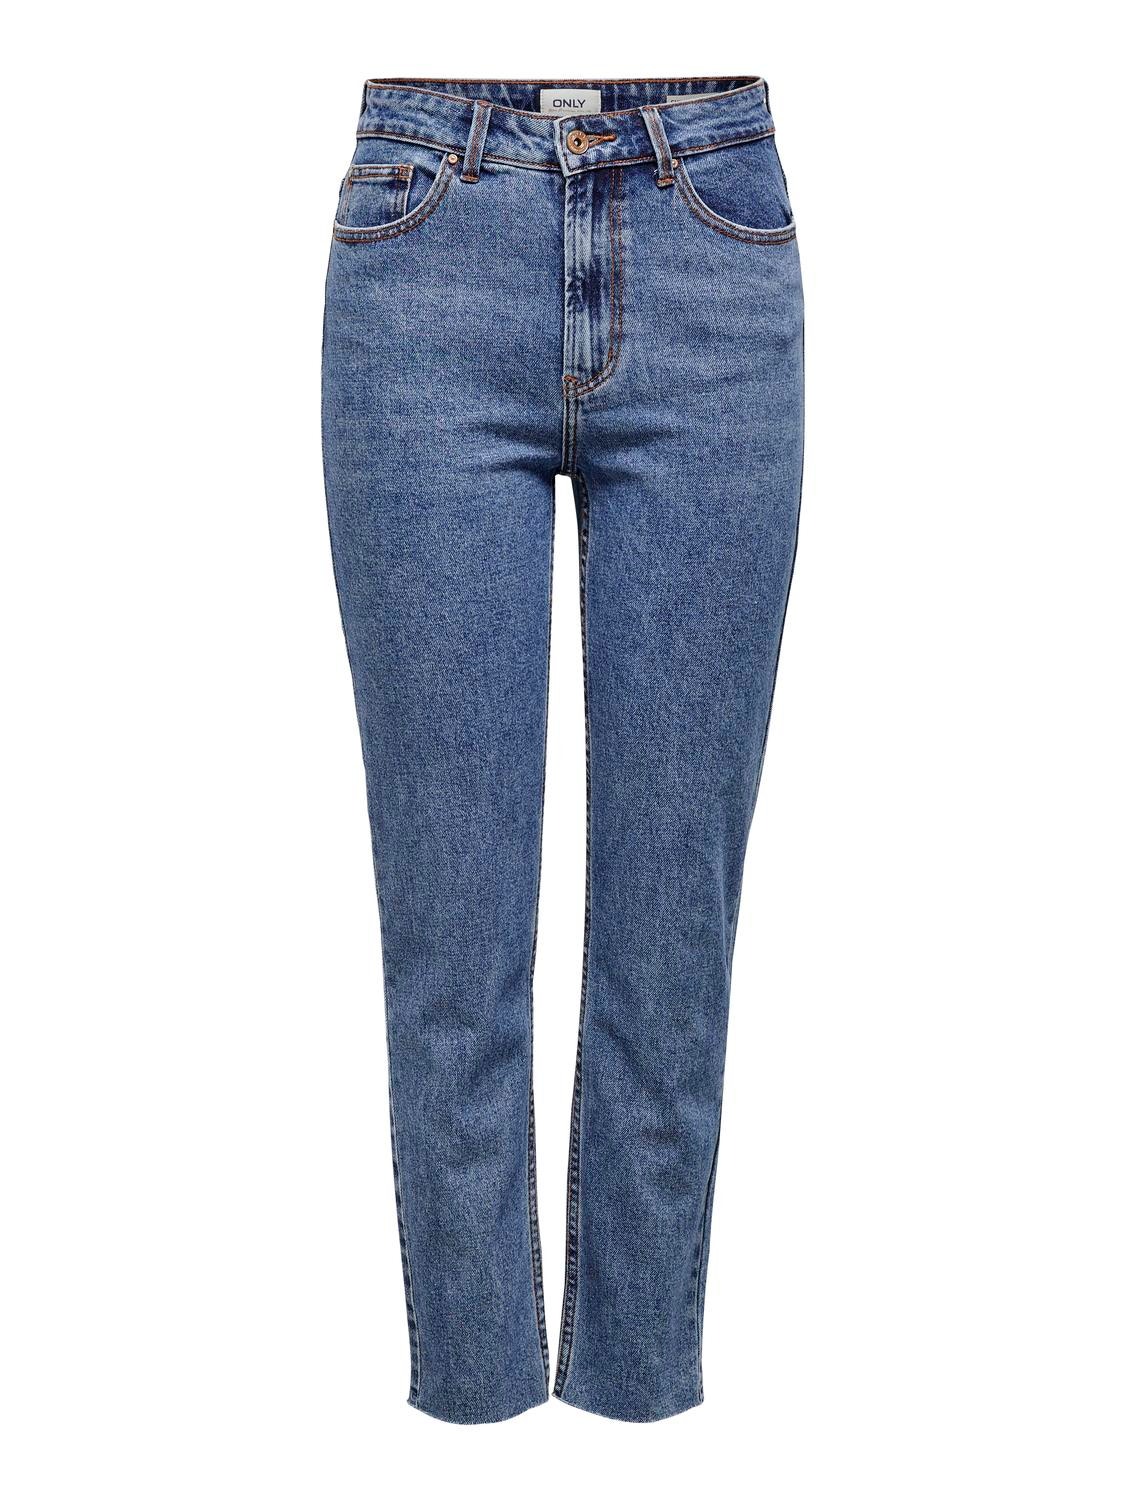 ONLY ONLEmily HW Straight Fit Jeans -Dark Blue Denim - 15171549